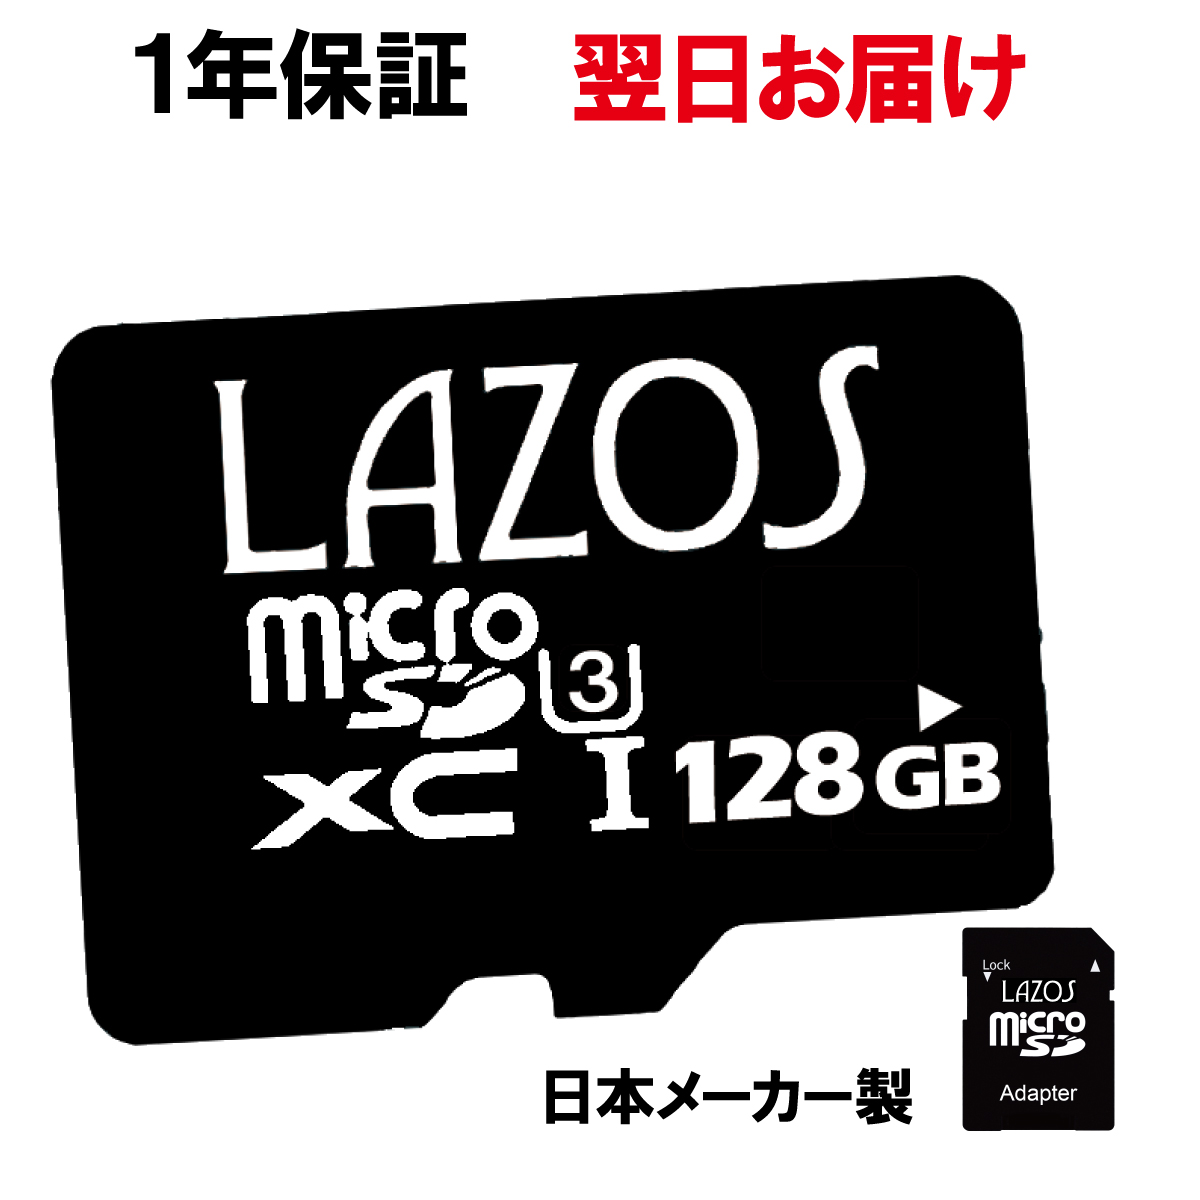   マイクロSDカード 128GB microSDカード マイクロ SDカード microSD SDXC ニンテンドースイッチ ドラレコ ドライブレコーダー スマホ ポイント消化 おすすめ メモリーカード android iPhone 高速 セール